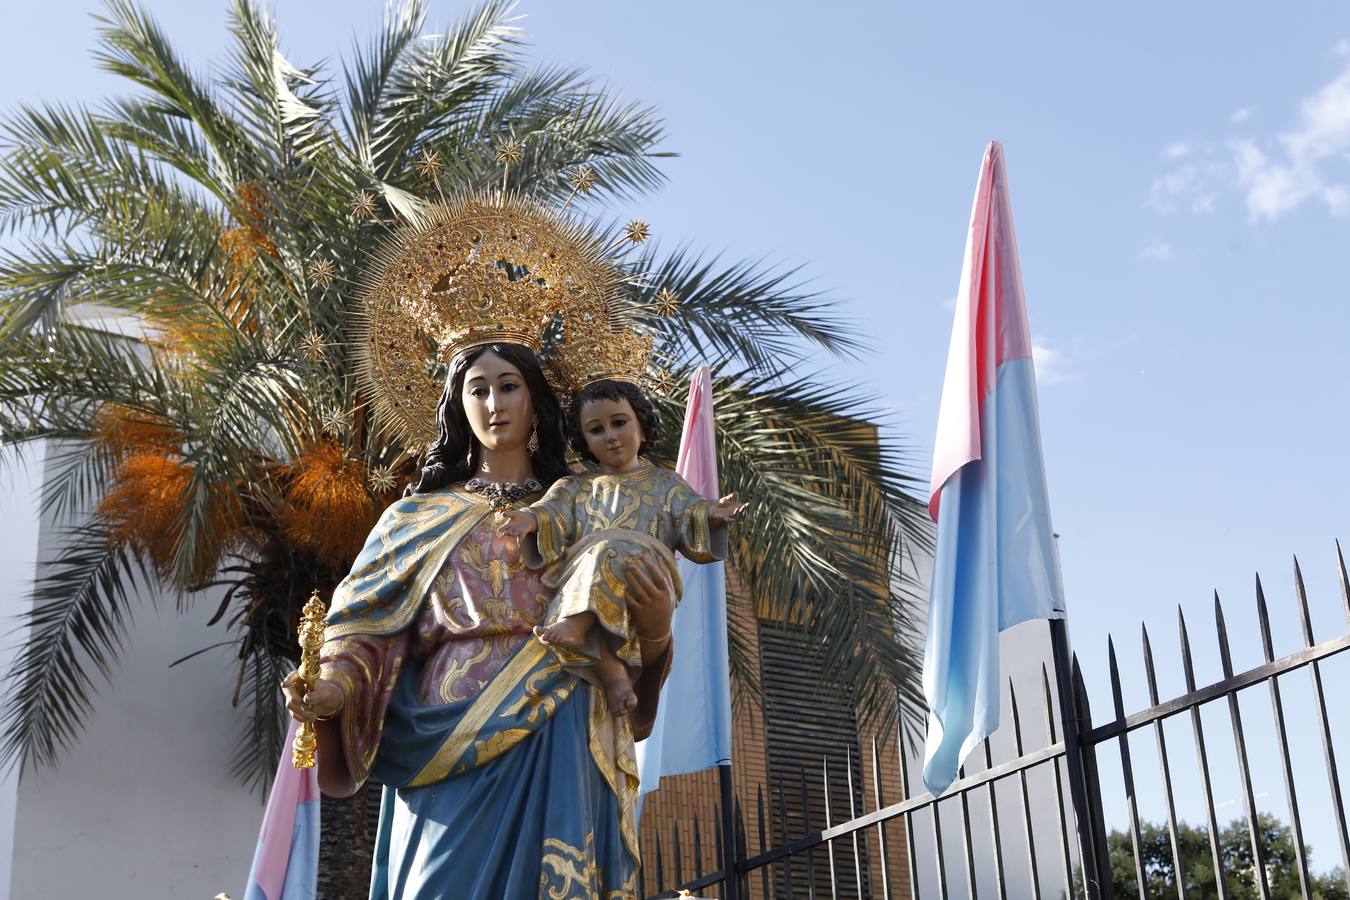 La celebración en honor a María Auxiliadora en Córdoba, en imágenes